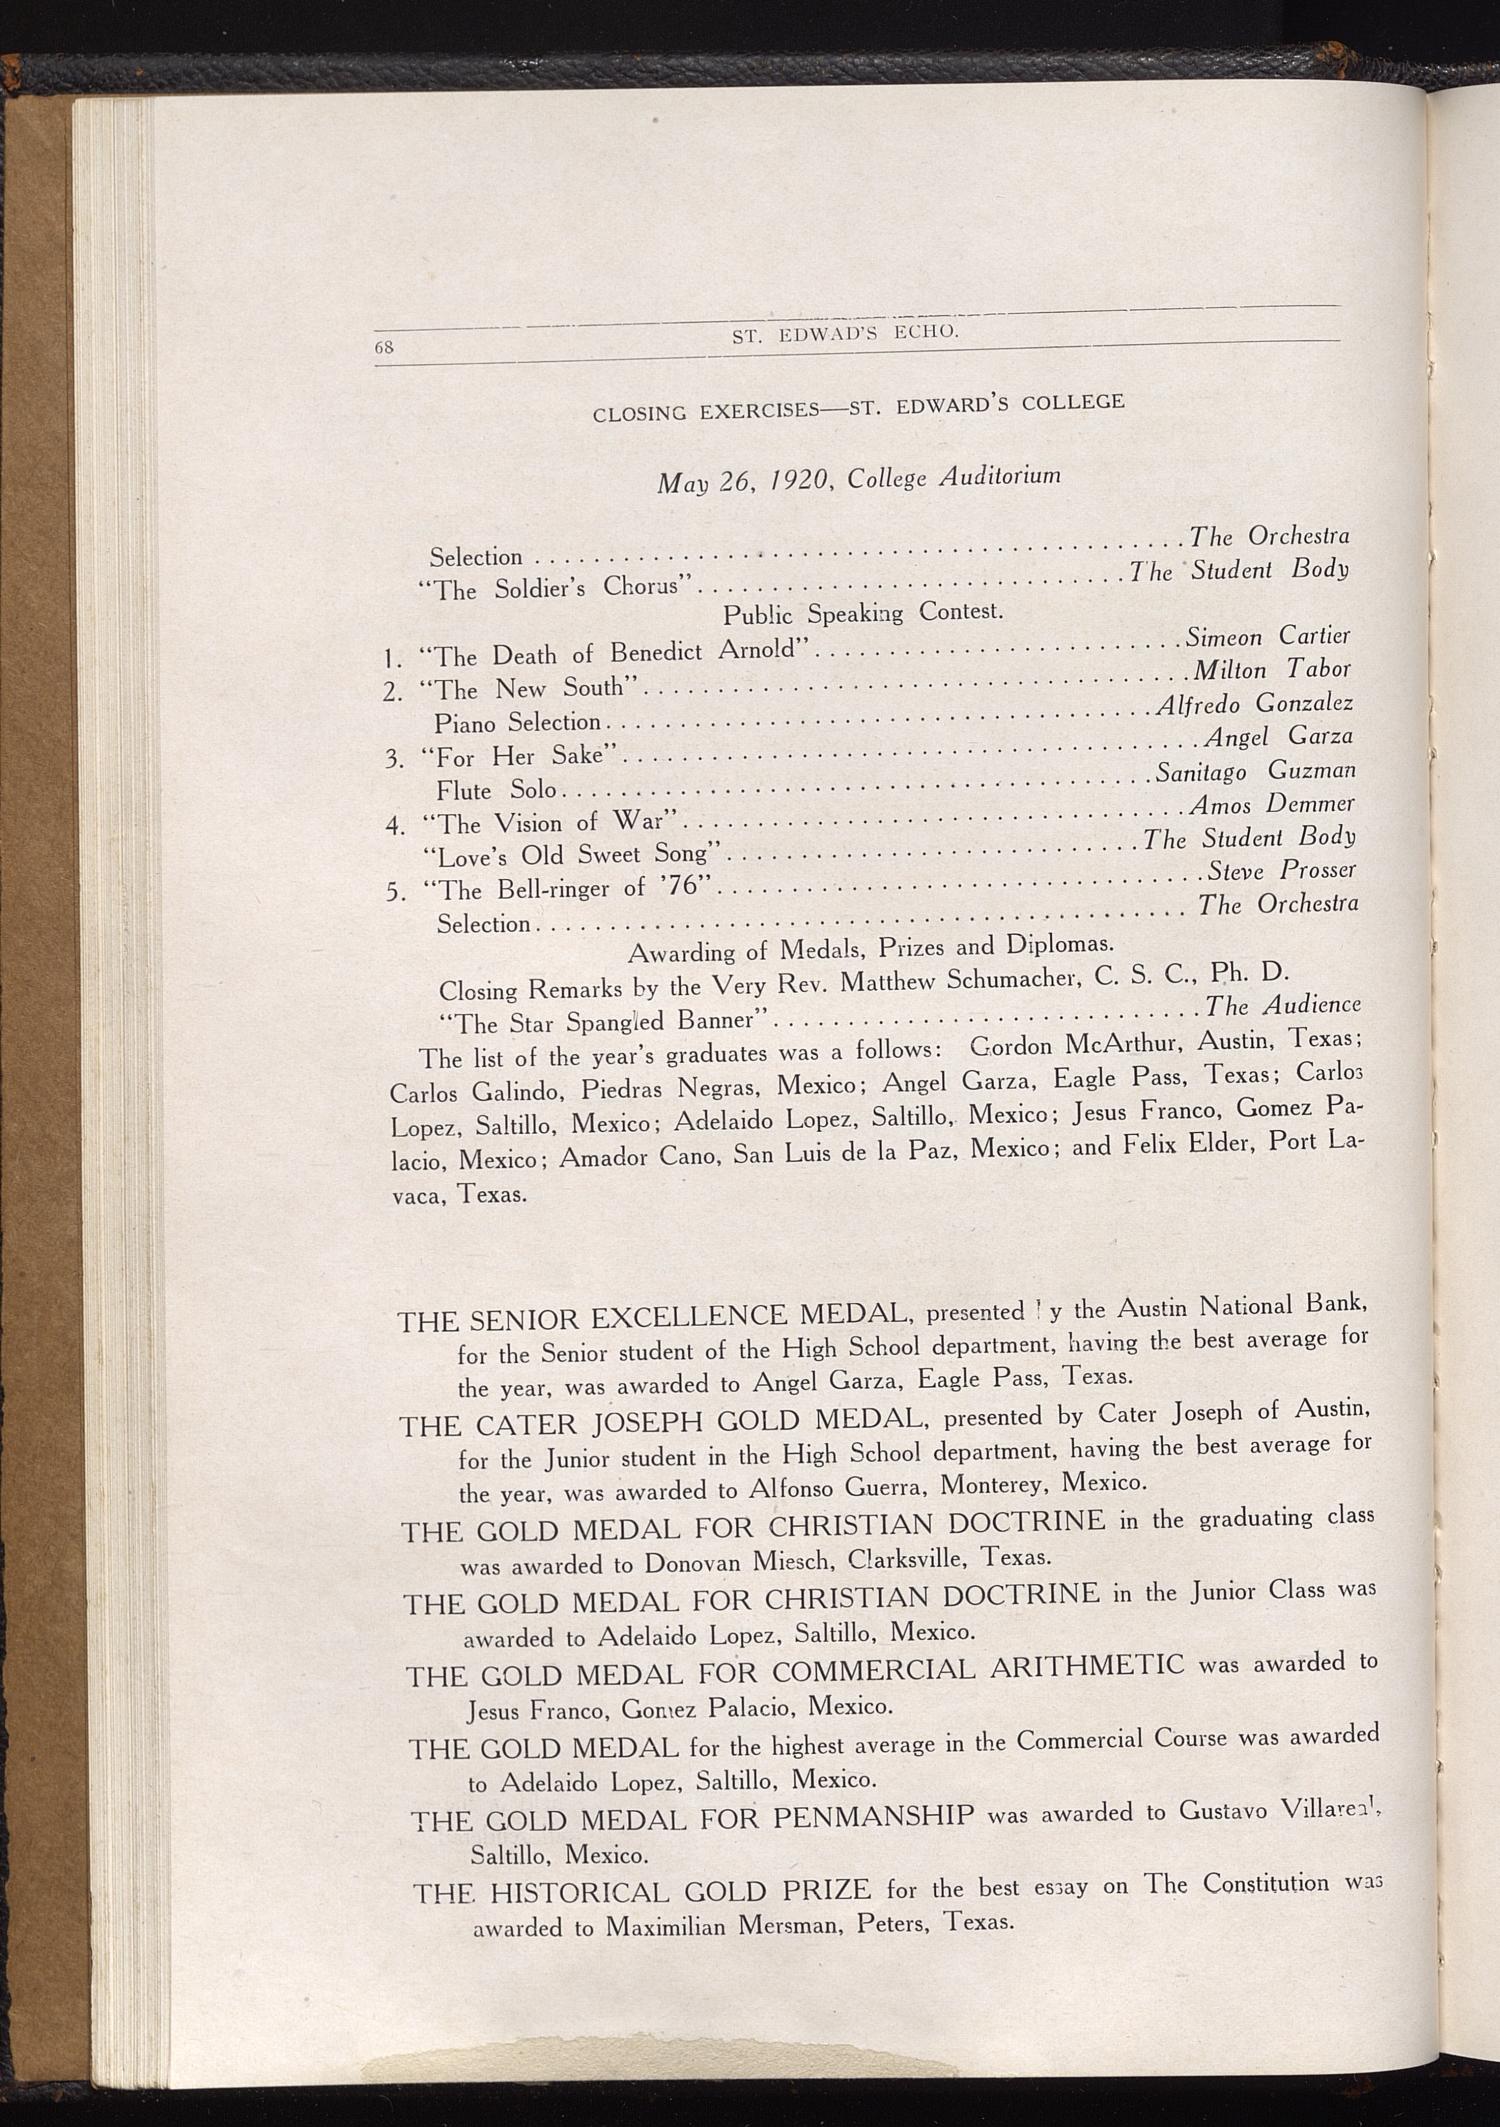 St. Edward's Echo (Austin, Tex.), Vol. 1, No. 4, Ed. 1, April 1920 - DPLA - 583a88820062317fc39a72e0caf16d7a (page 14)